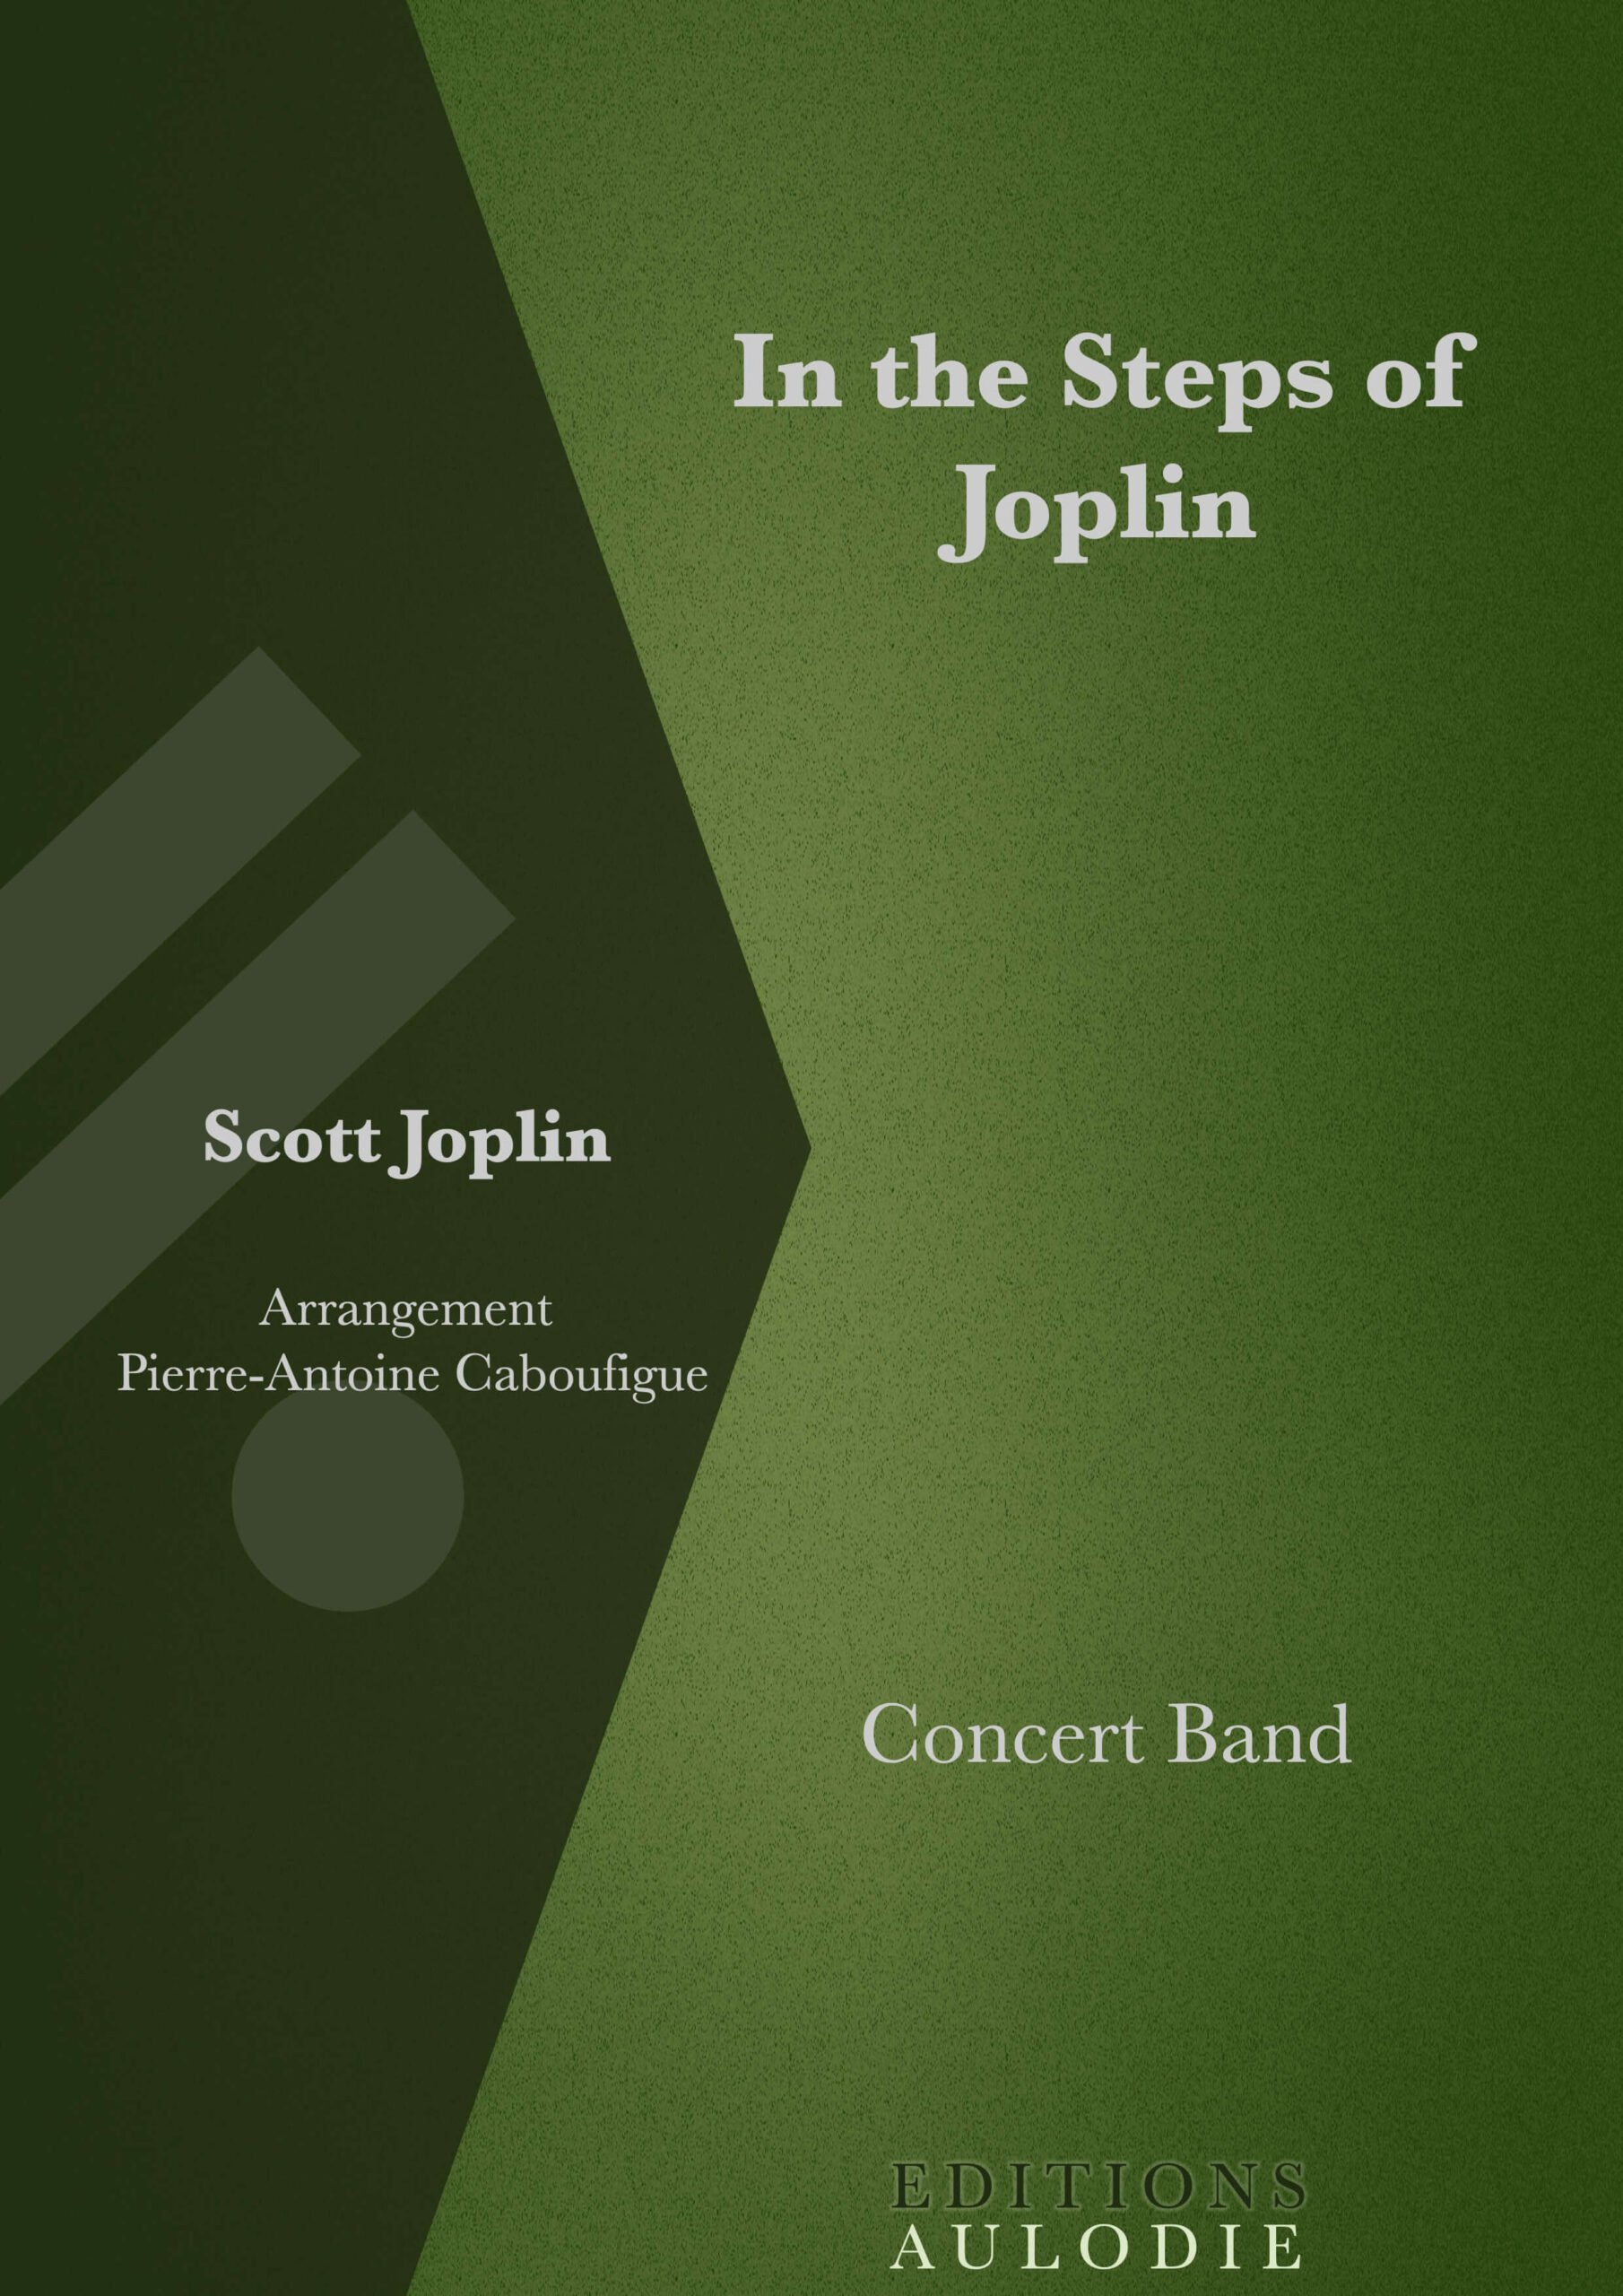 EA01010-In_the_Steps_of_Joplin-Scott_Joplin-Concert_Band